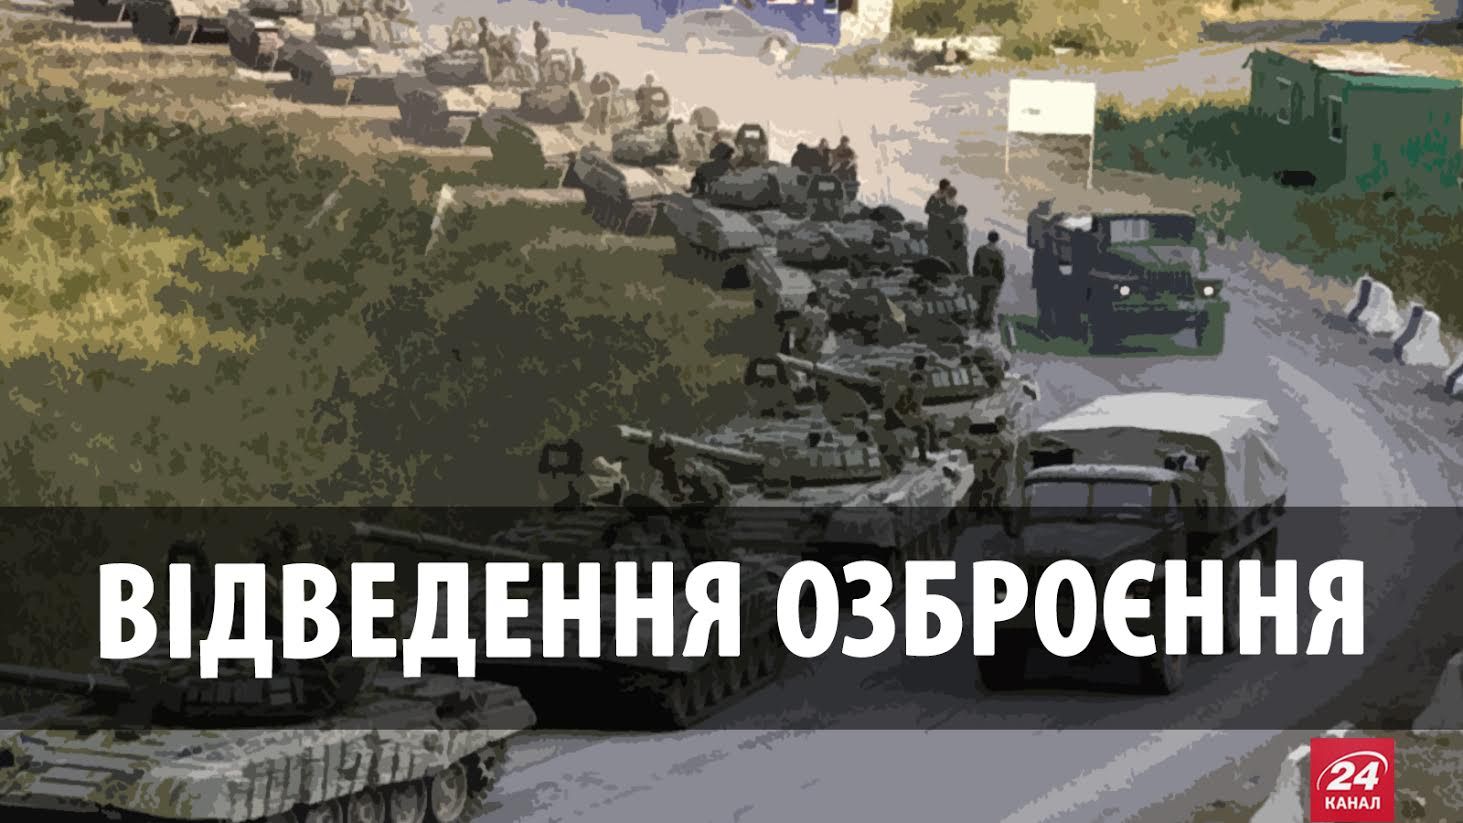 Отвод вооружения на Донбассе: мир или "Приднестровье"?